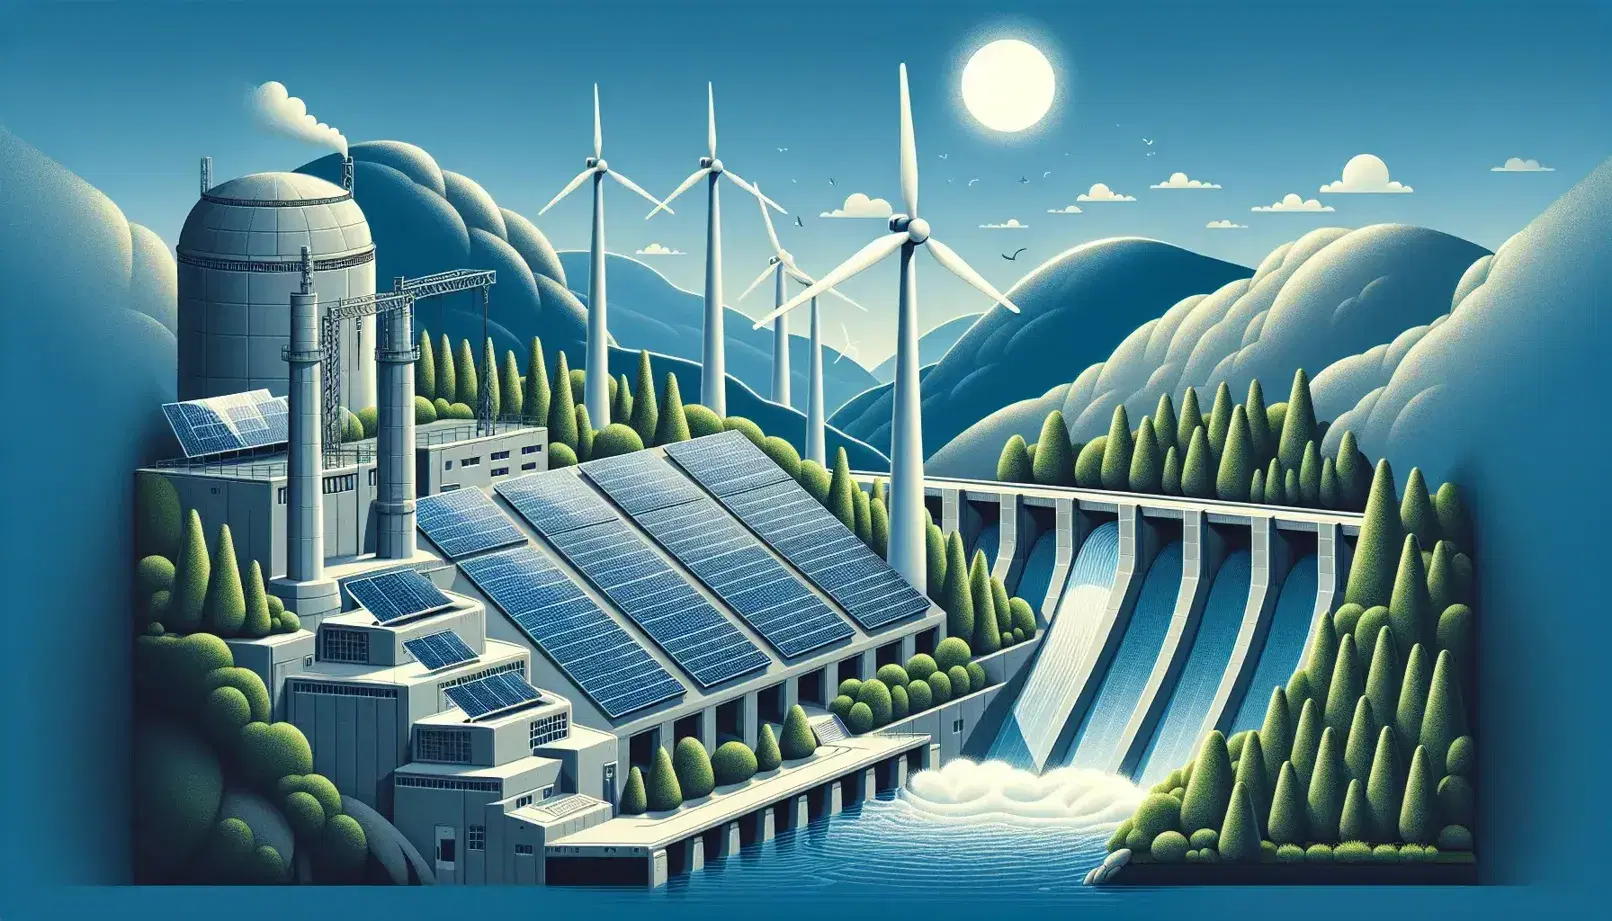 Paneles solares azules y turbina eólica blanca bajo cielo despejado, junto a presa hidroeléctrica y planta de energía limpia en paisaje natural.